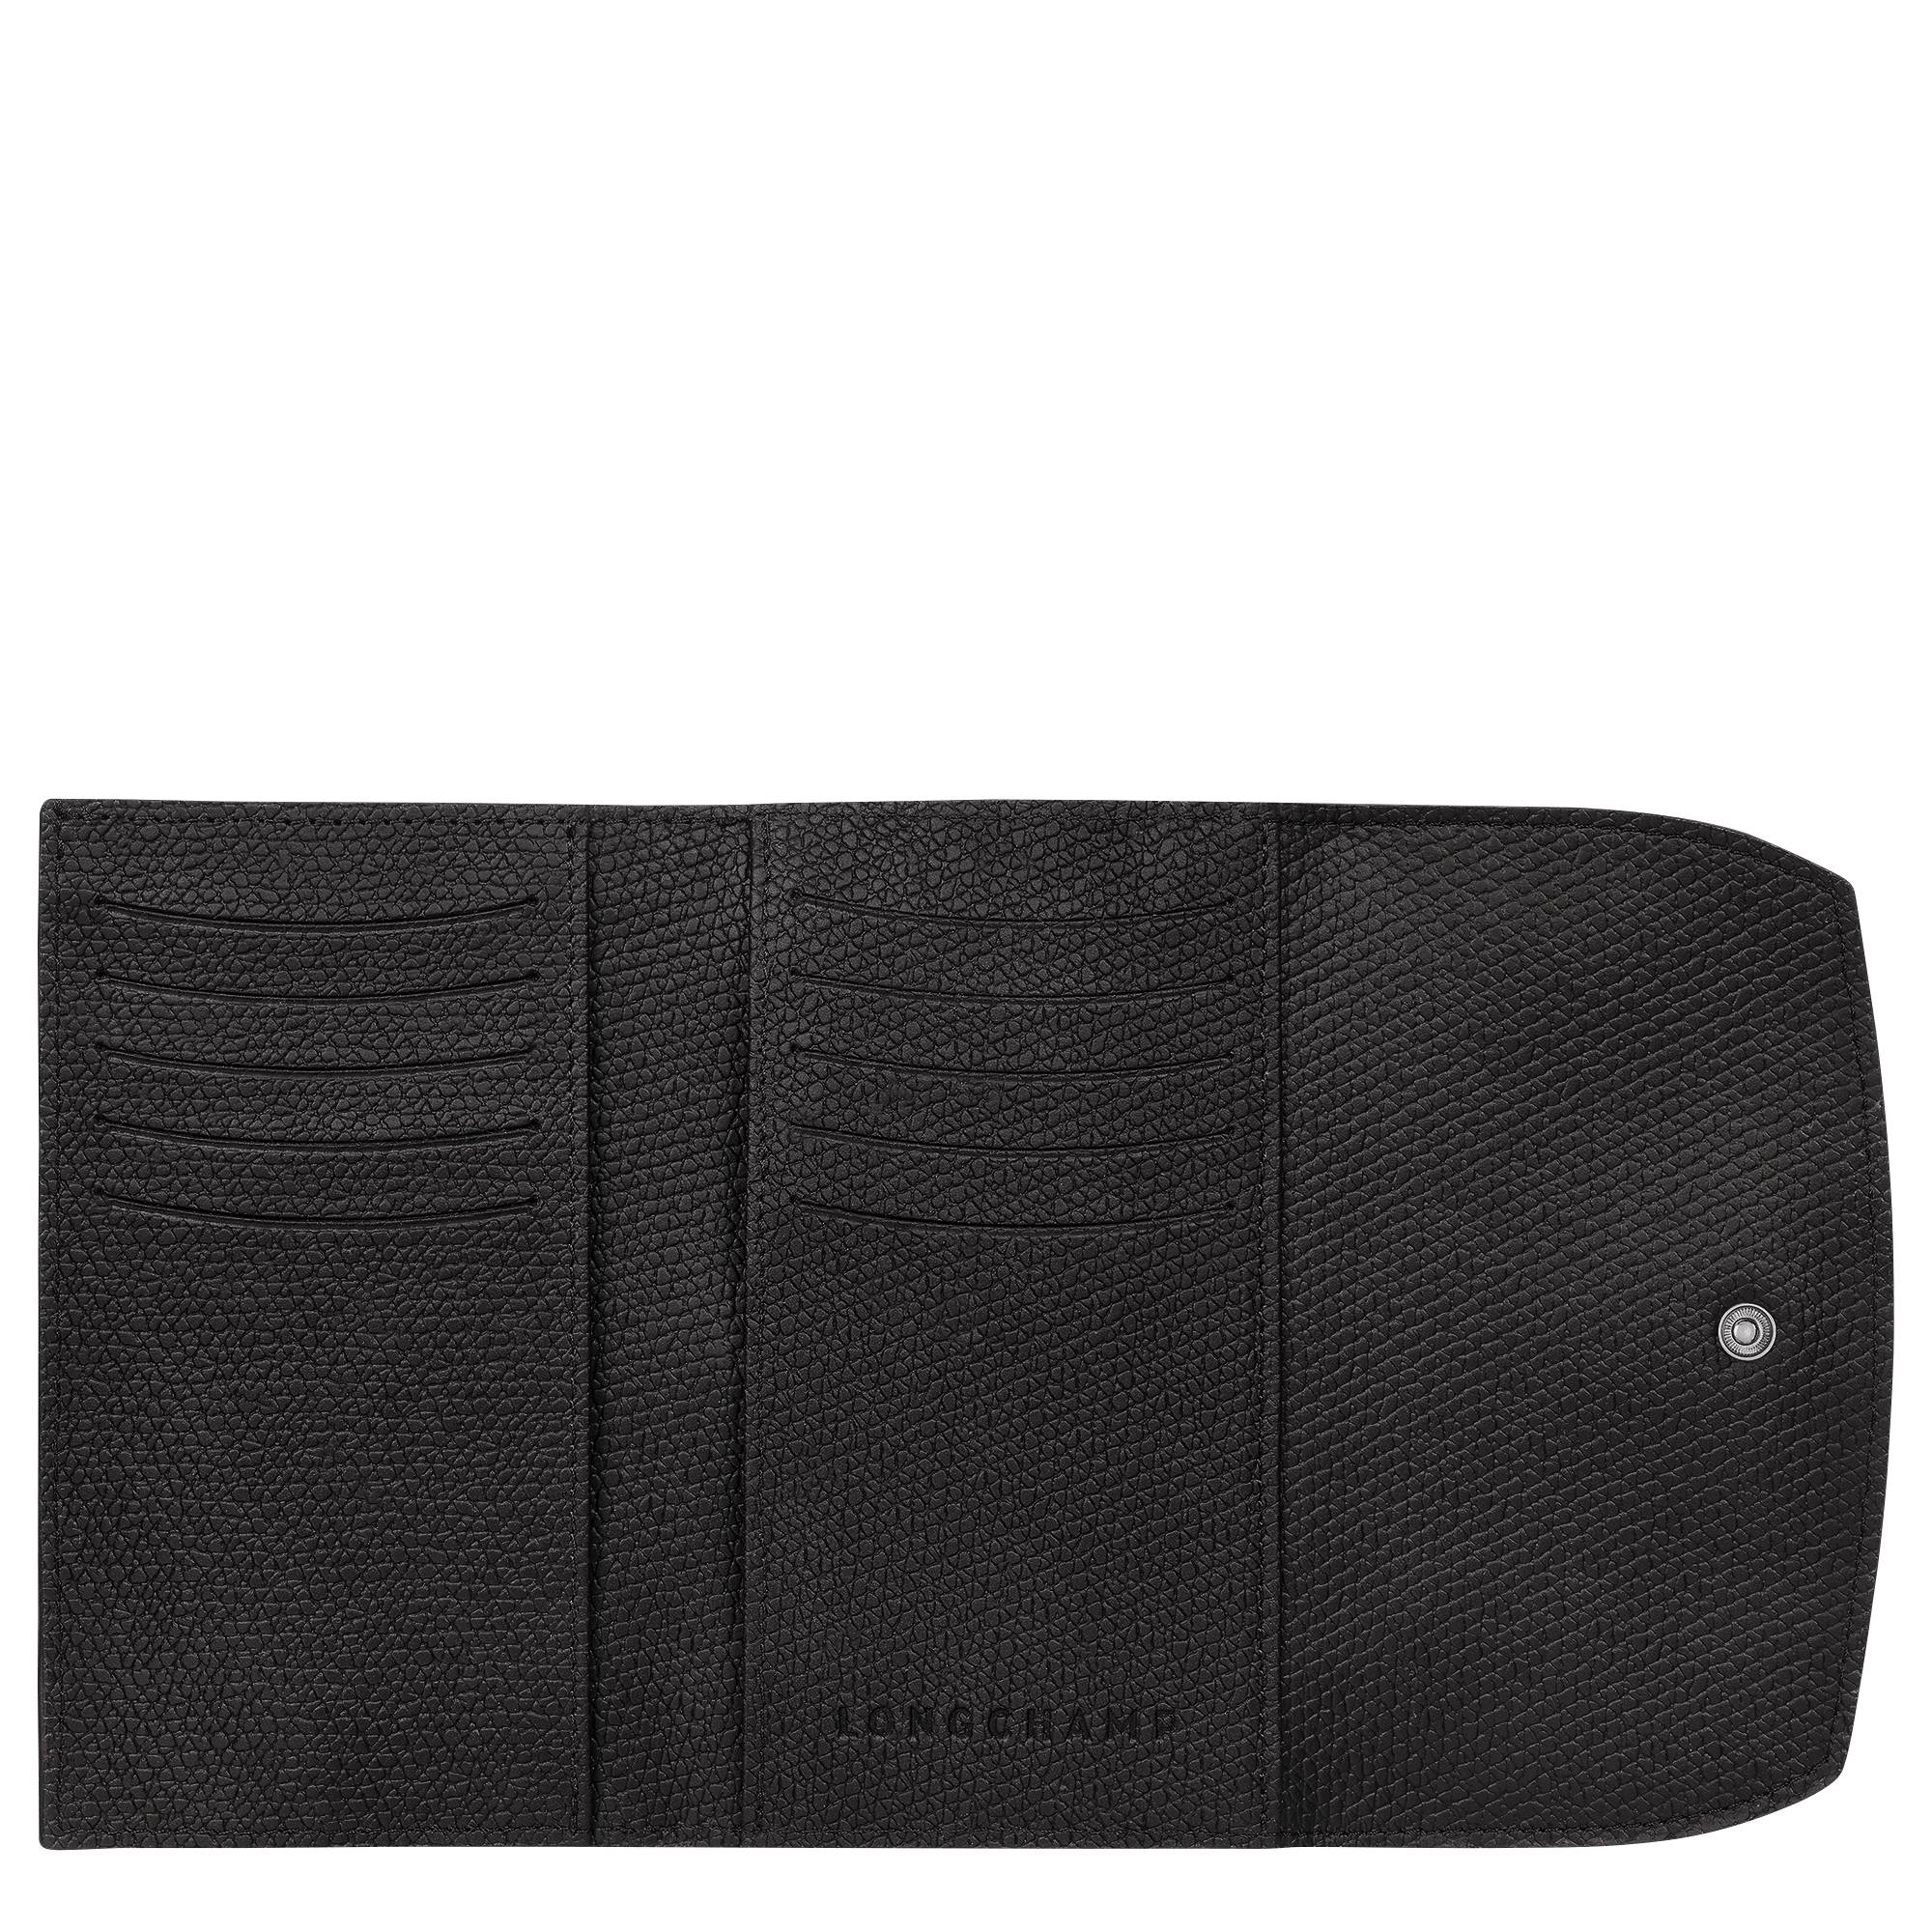 Portefeuille compact Longchamp Roseau à rabat 30002HPN 001 noir ouvert